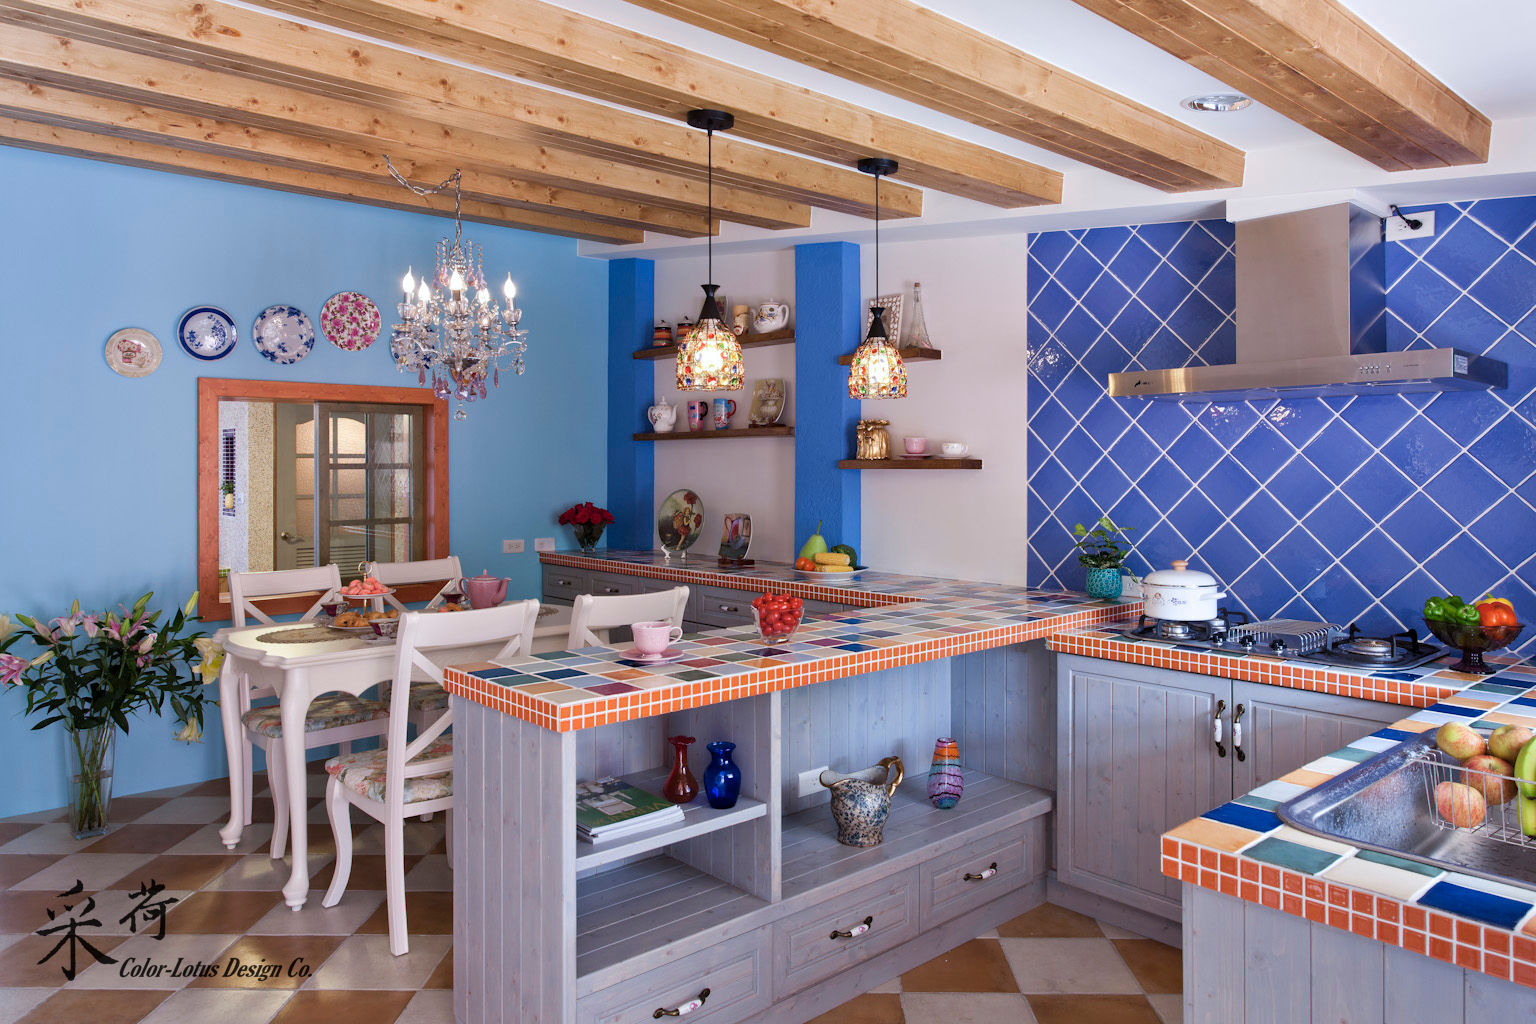 西班牙鄉村風格-透天別墅, Color-Lotus Design Color-Lotus Design Country style kitchen Tiles Cabinets & shelves